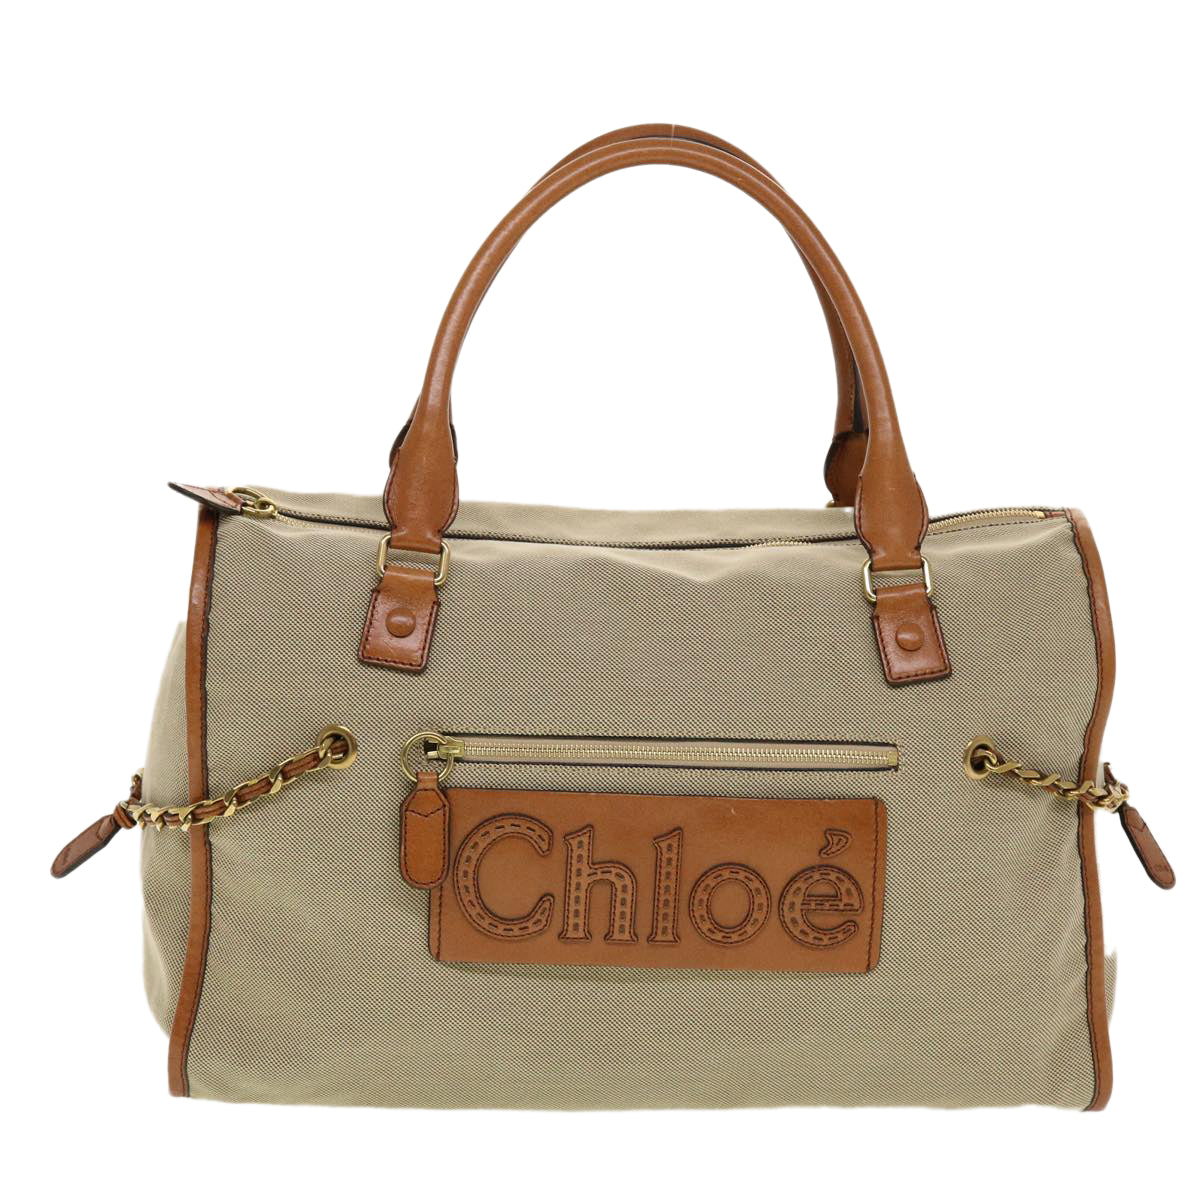 Chloe Harley Boston Bag Canvas Beige 01 10 51 6008 Auth yk7112